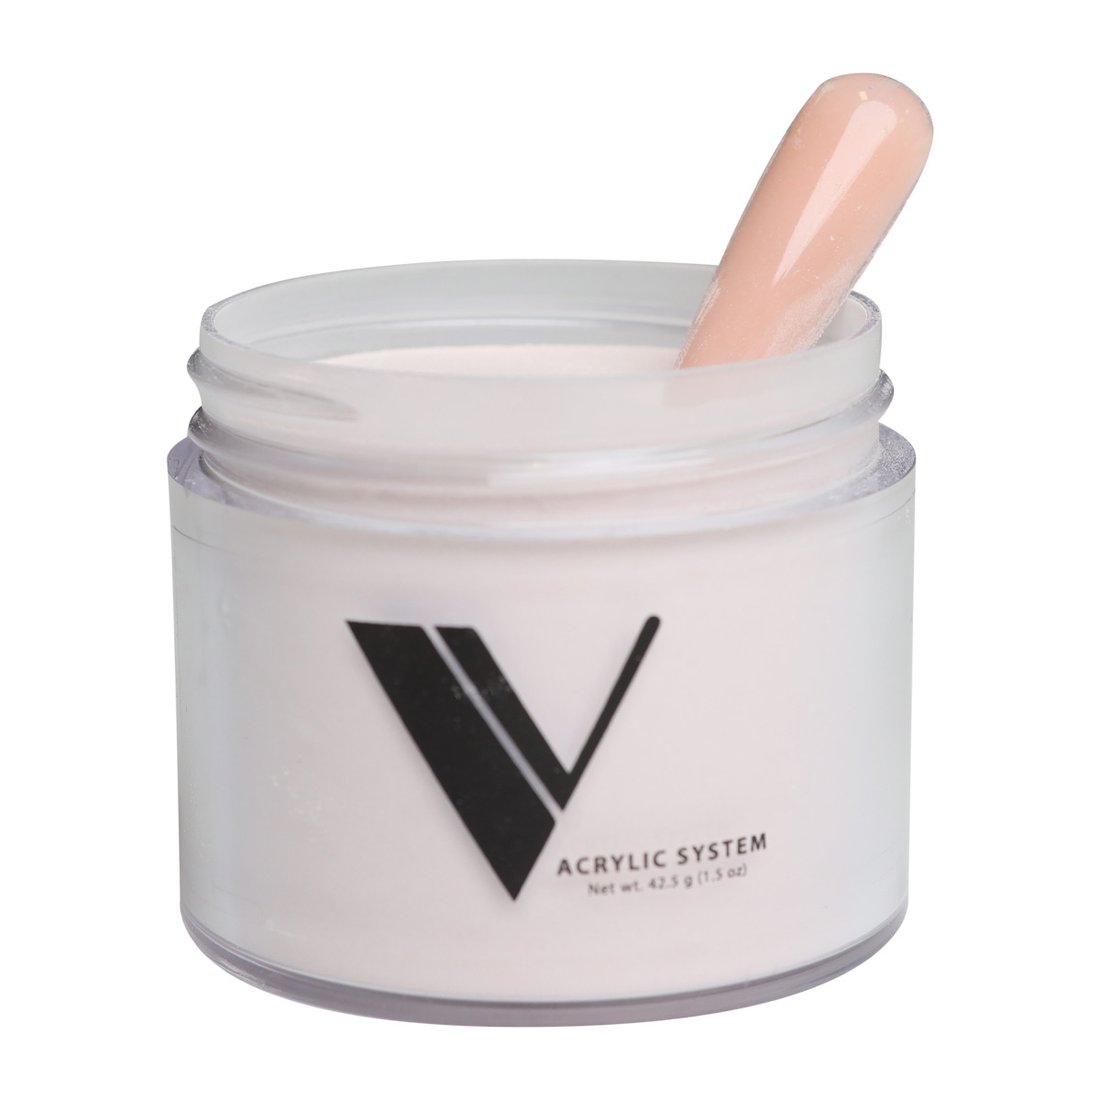 Valentino Beauty Pure - Cover Powder - Creme 1.5 oz